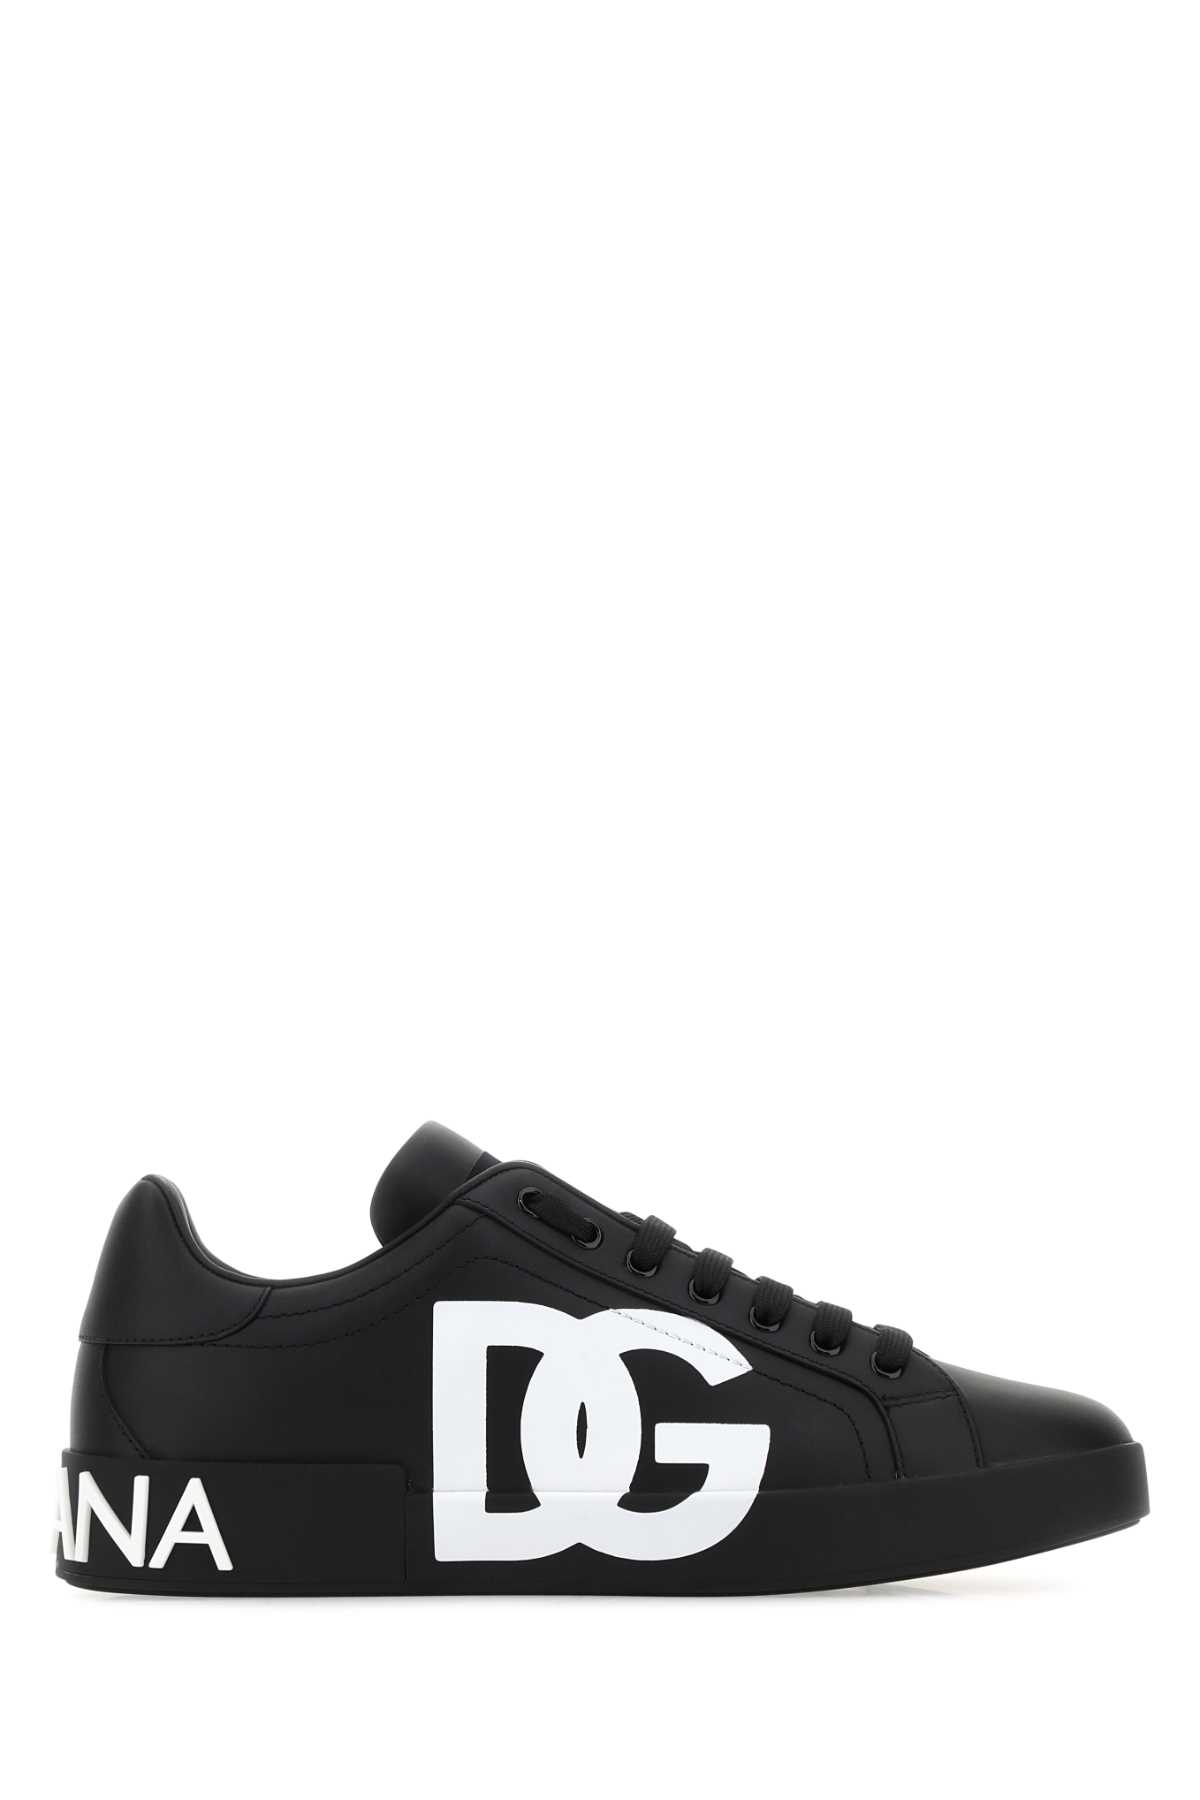 Shop Dolce & Gabbana Black Nappa Leather Portofino Sneakers In 8b956